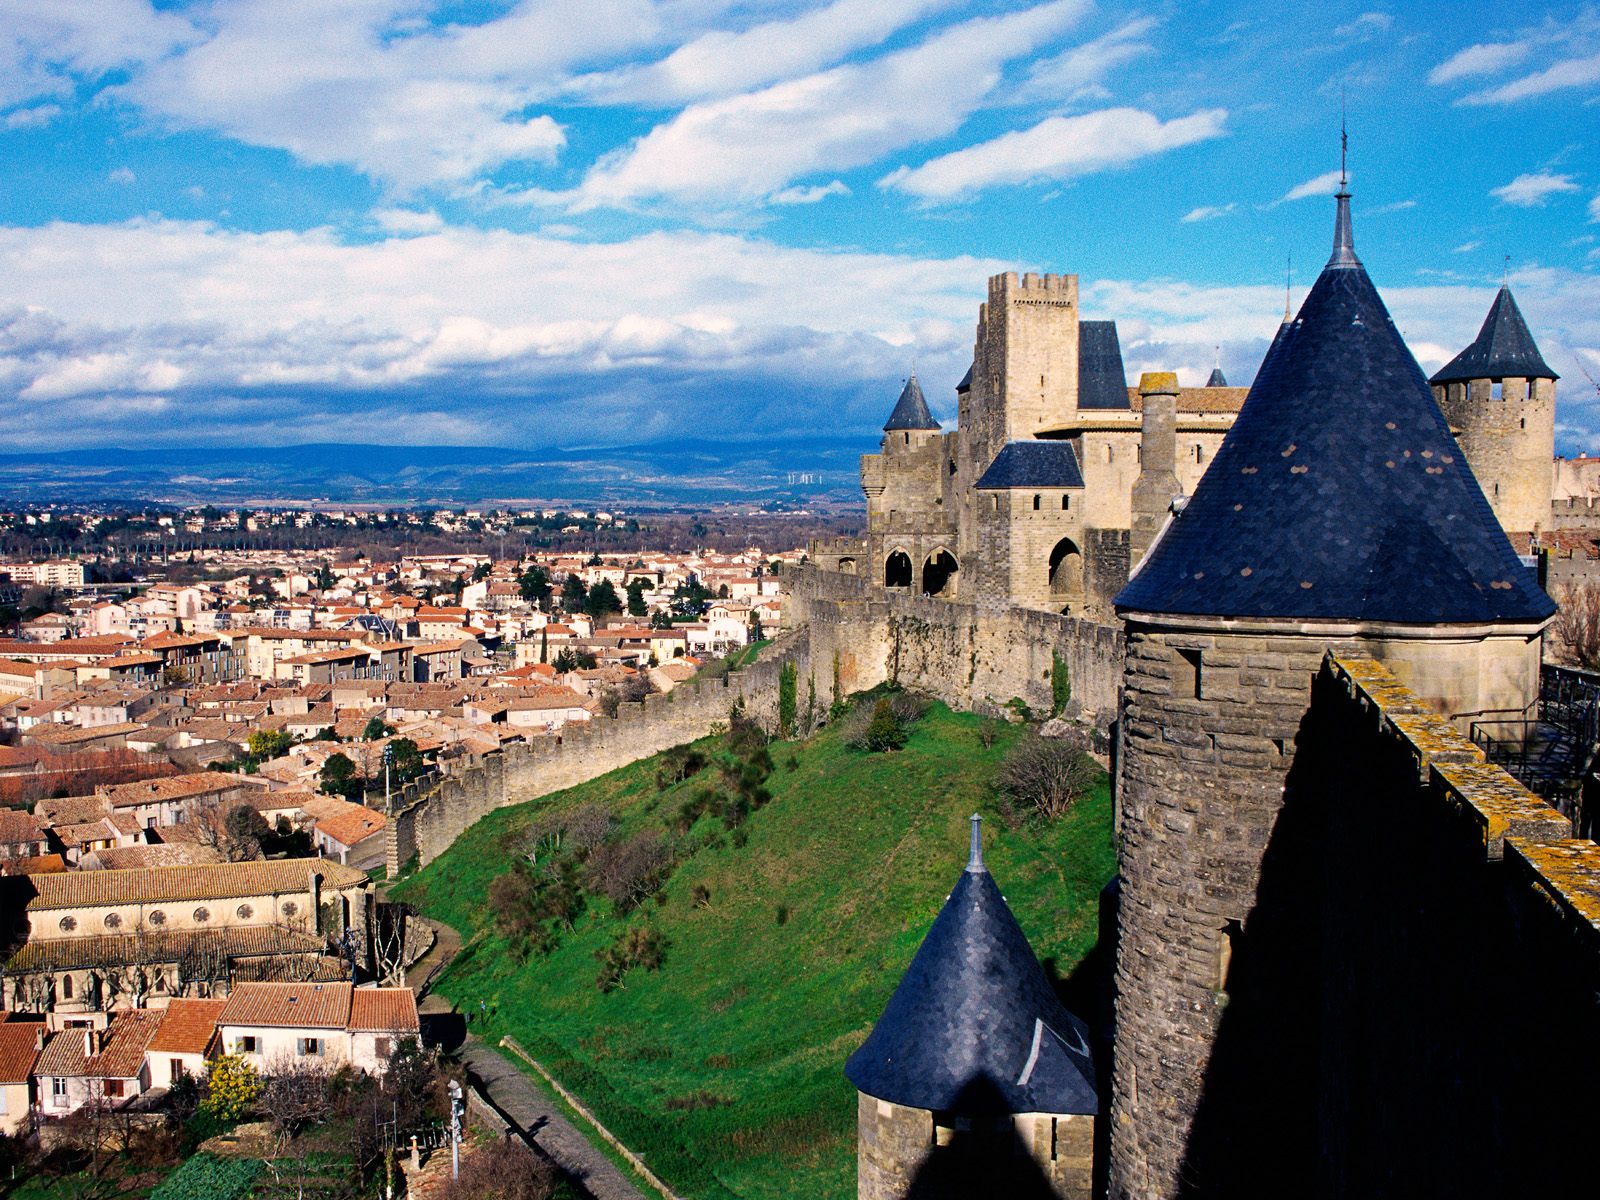 http://2.bp.blogspot.com/-Oo9nR1fvUAs/Tipu4kgPSRI/AAAAAAAAAfU/vSsU1tUqqG0/s1600/Comtal_Castle_Carcassonne_France_1_.jpg